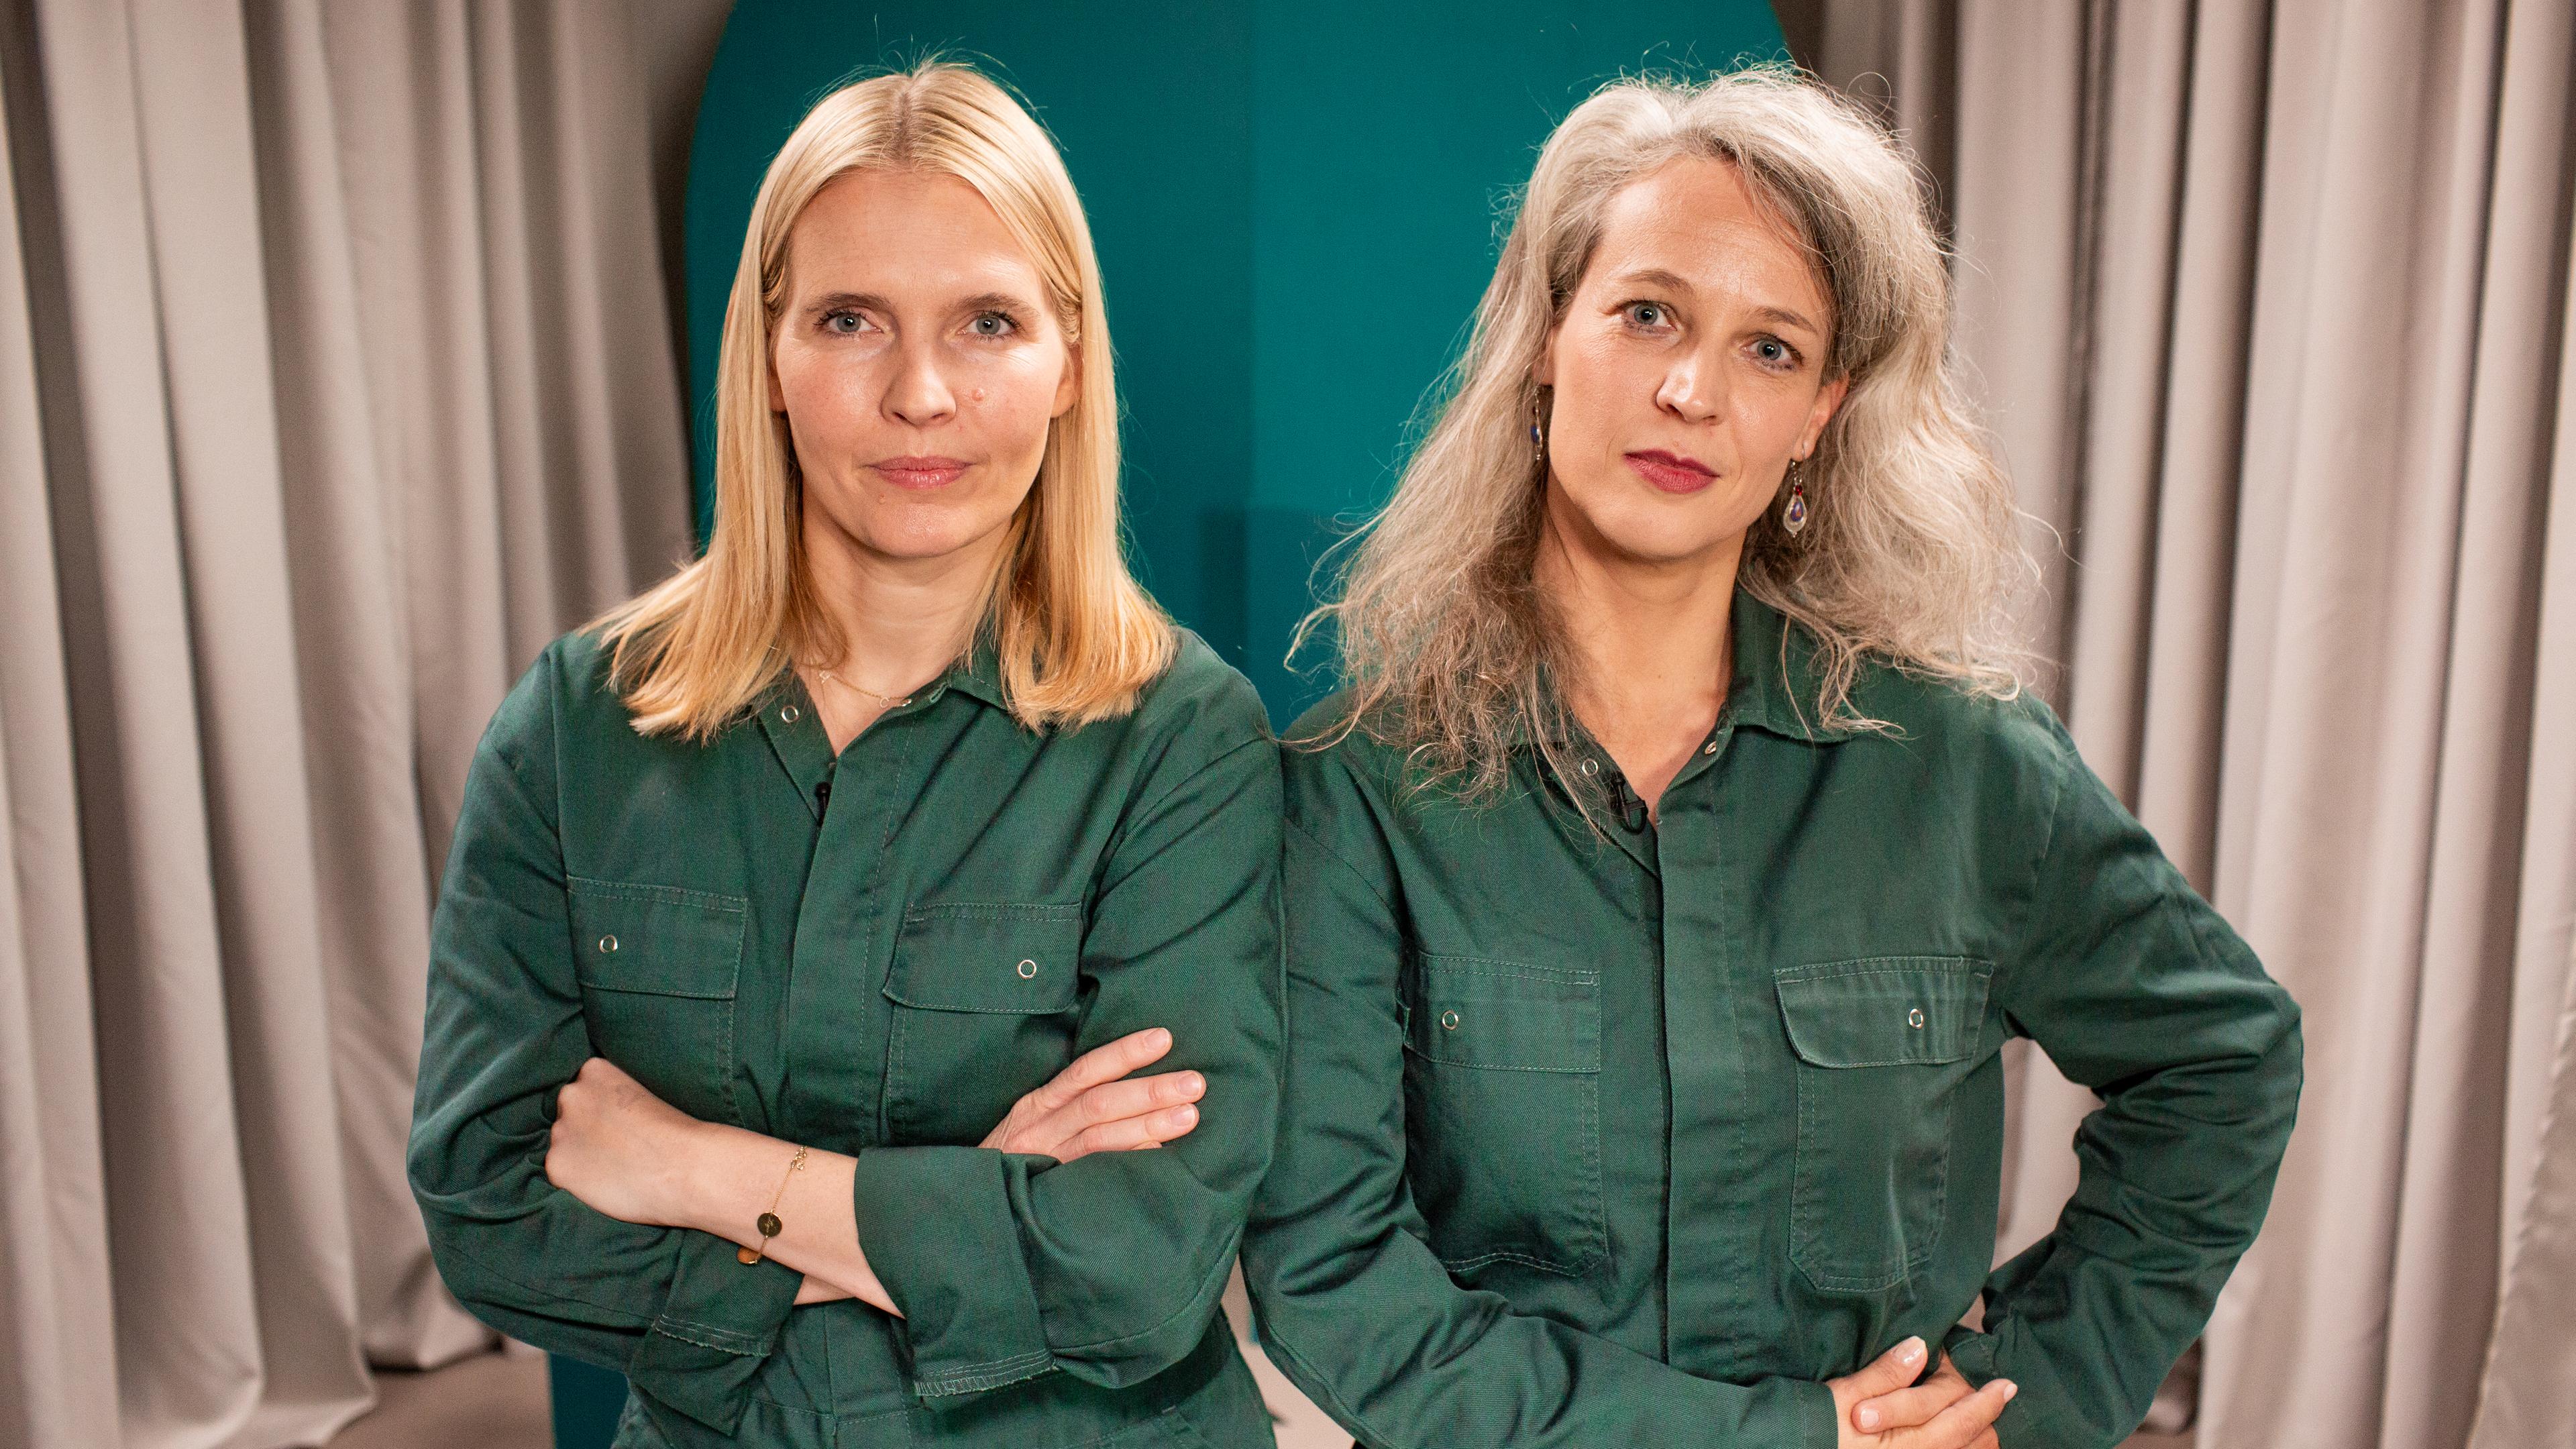 Zwei blonde, einen grünen Overall tragende Frauen stehen mit verschränkten Armen nebeneinander.